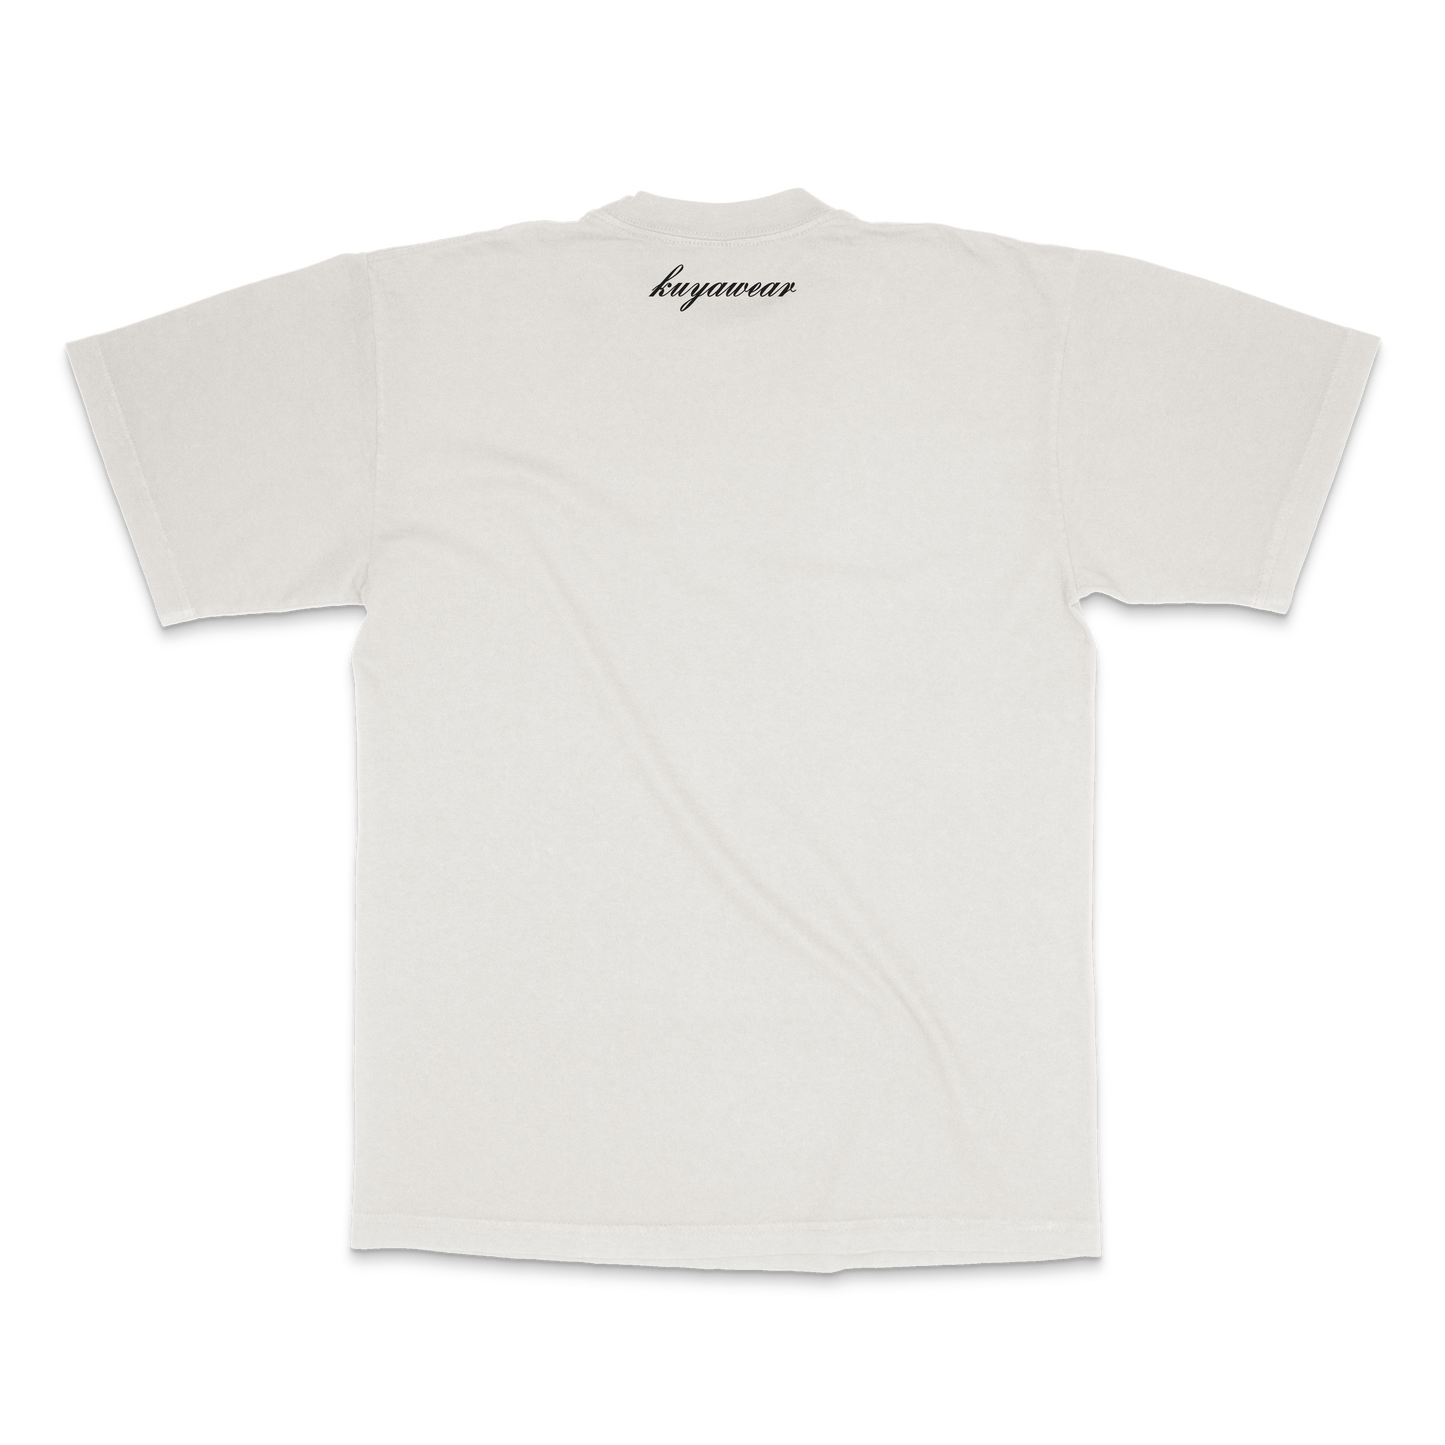 Ateh Collegiate T-Shirt (Off-White)